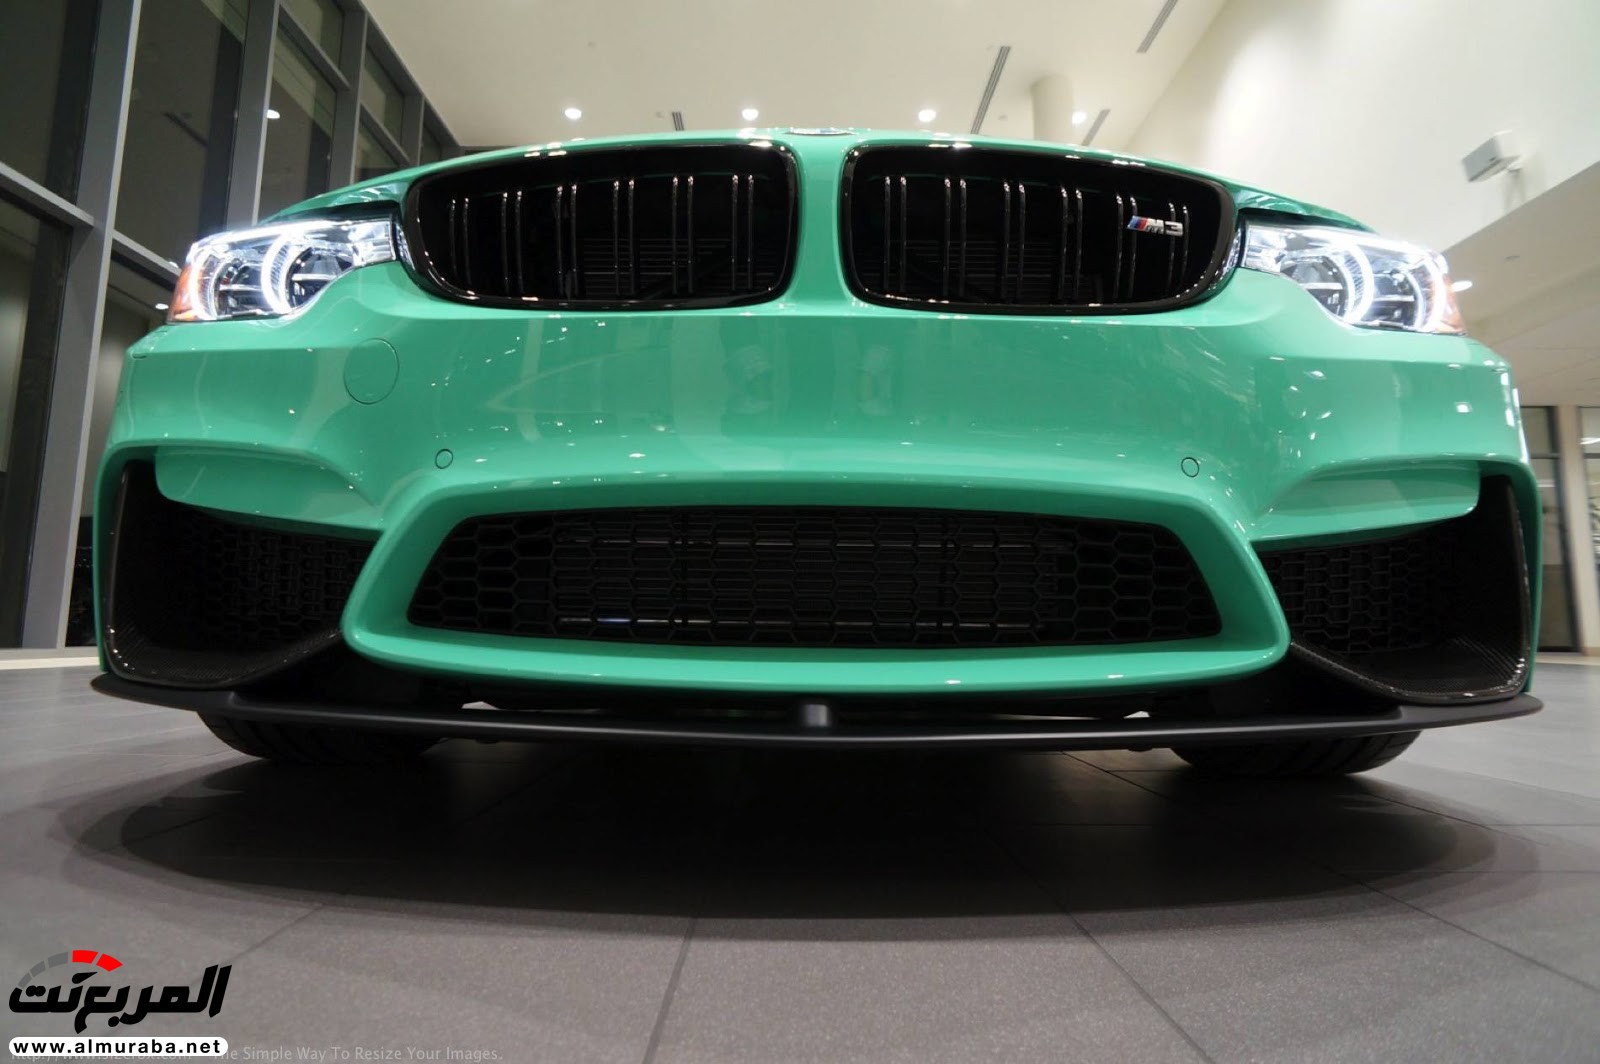 "بالصور" شاهد "بي إم دبليو" F80 M3 الخاصة بطلاء النعناع الأخضر BMW 117